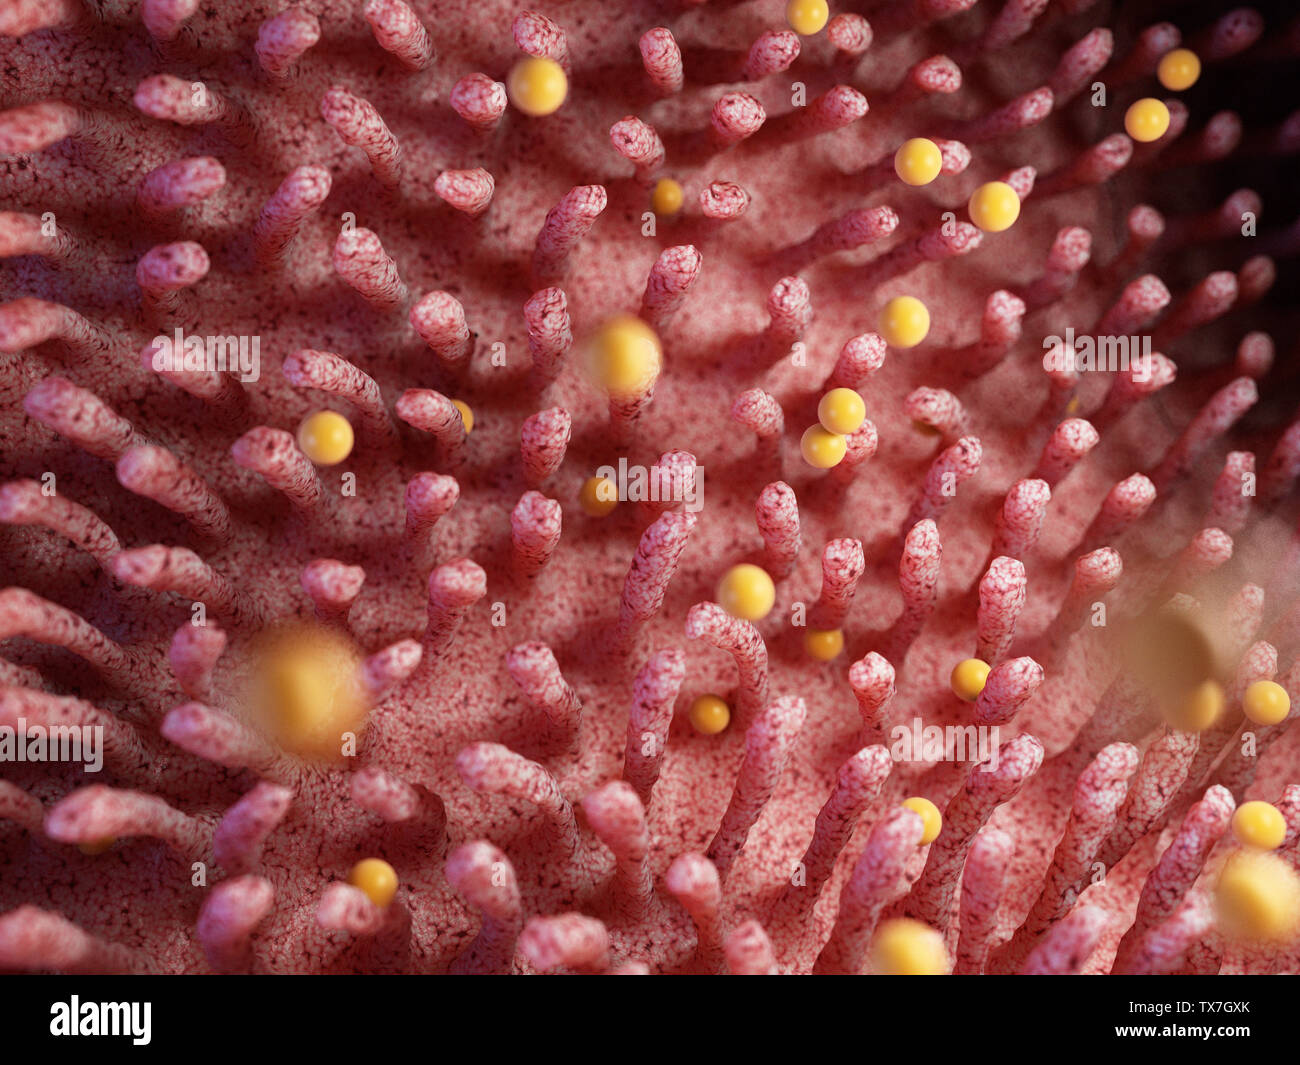 3D Rendering accurato dal punto di vista medico illustrazione di glutine danneggiare villis intestinale Foto Stock